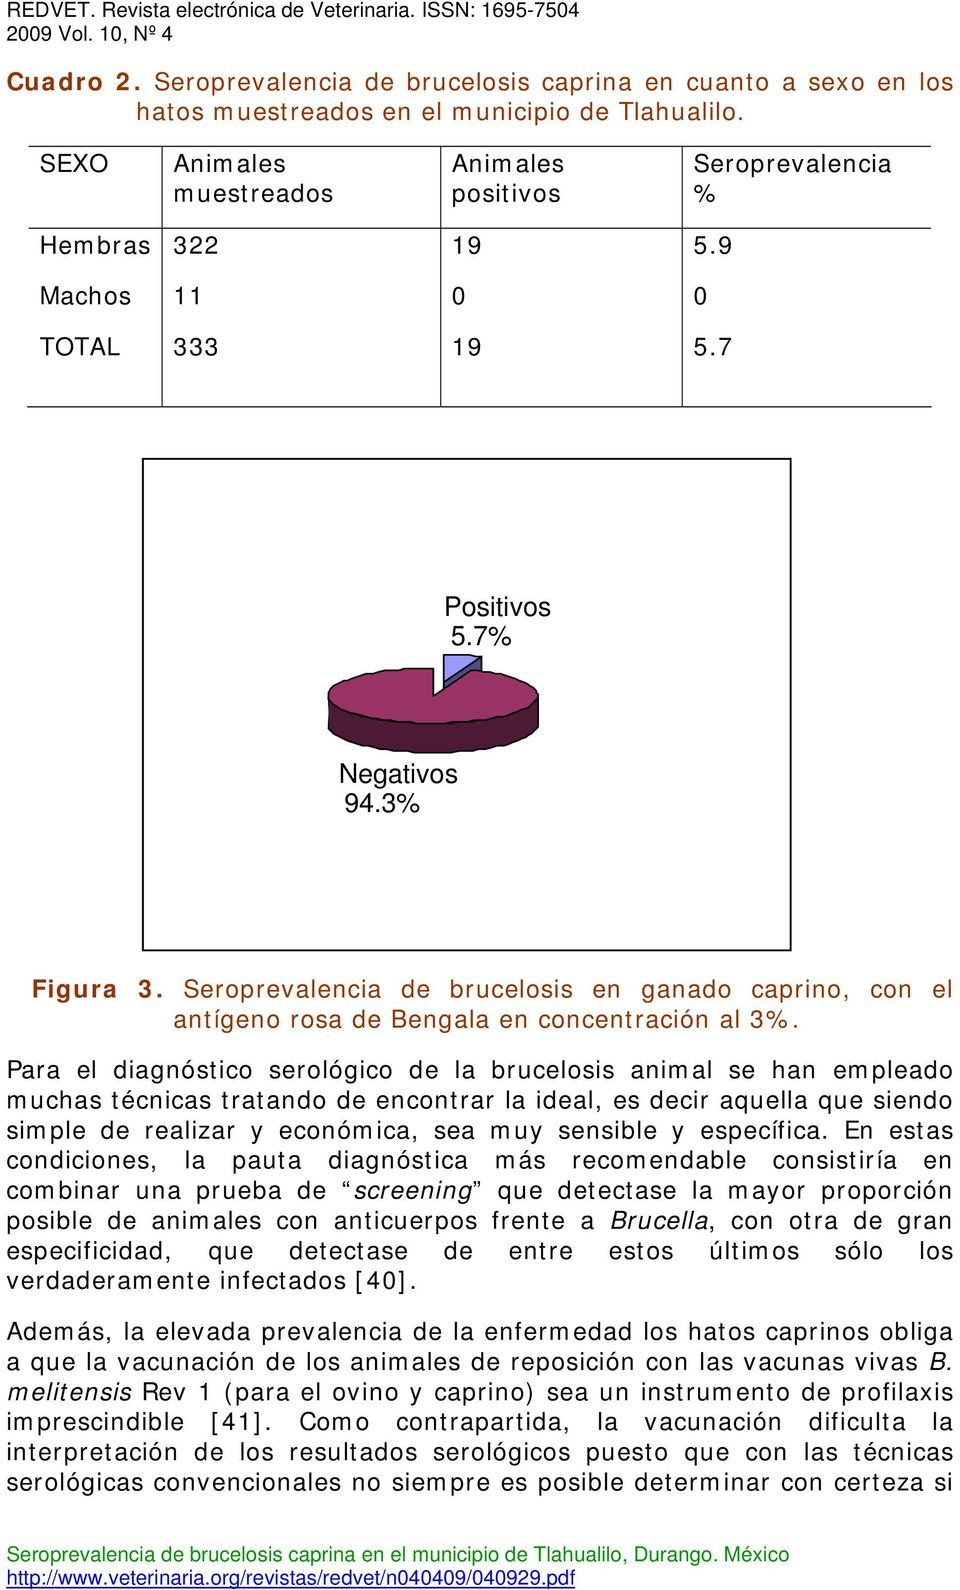 Seroprevalencia de brucelosis en ganado caprino, con el antígeno rosa de Bengala en concentración al 3%.